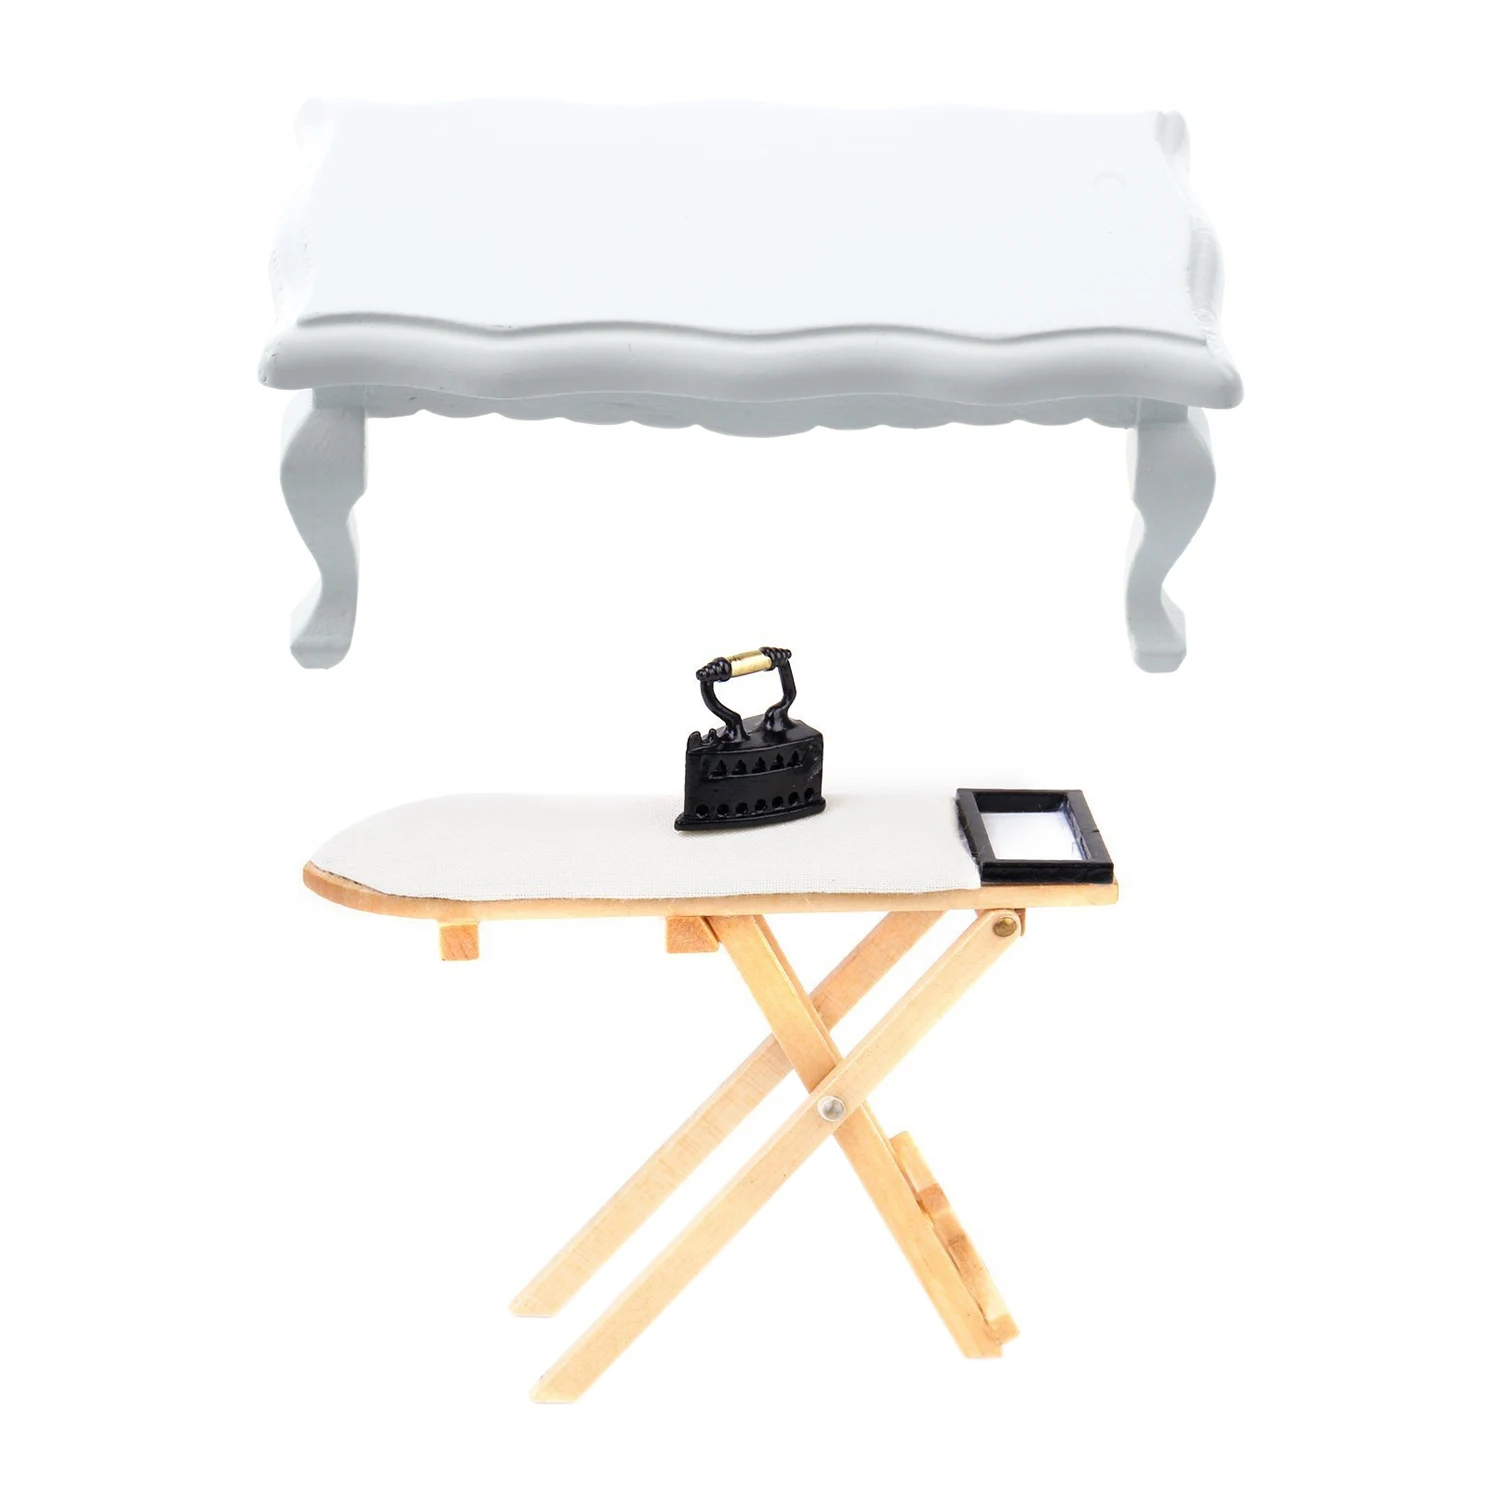 1/12 Миниатюрная мебель, деревянный кофейный столик с волнистыми краями, белый и миниатюрный набор утюга с гладильной доской 0